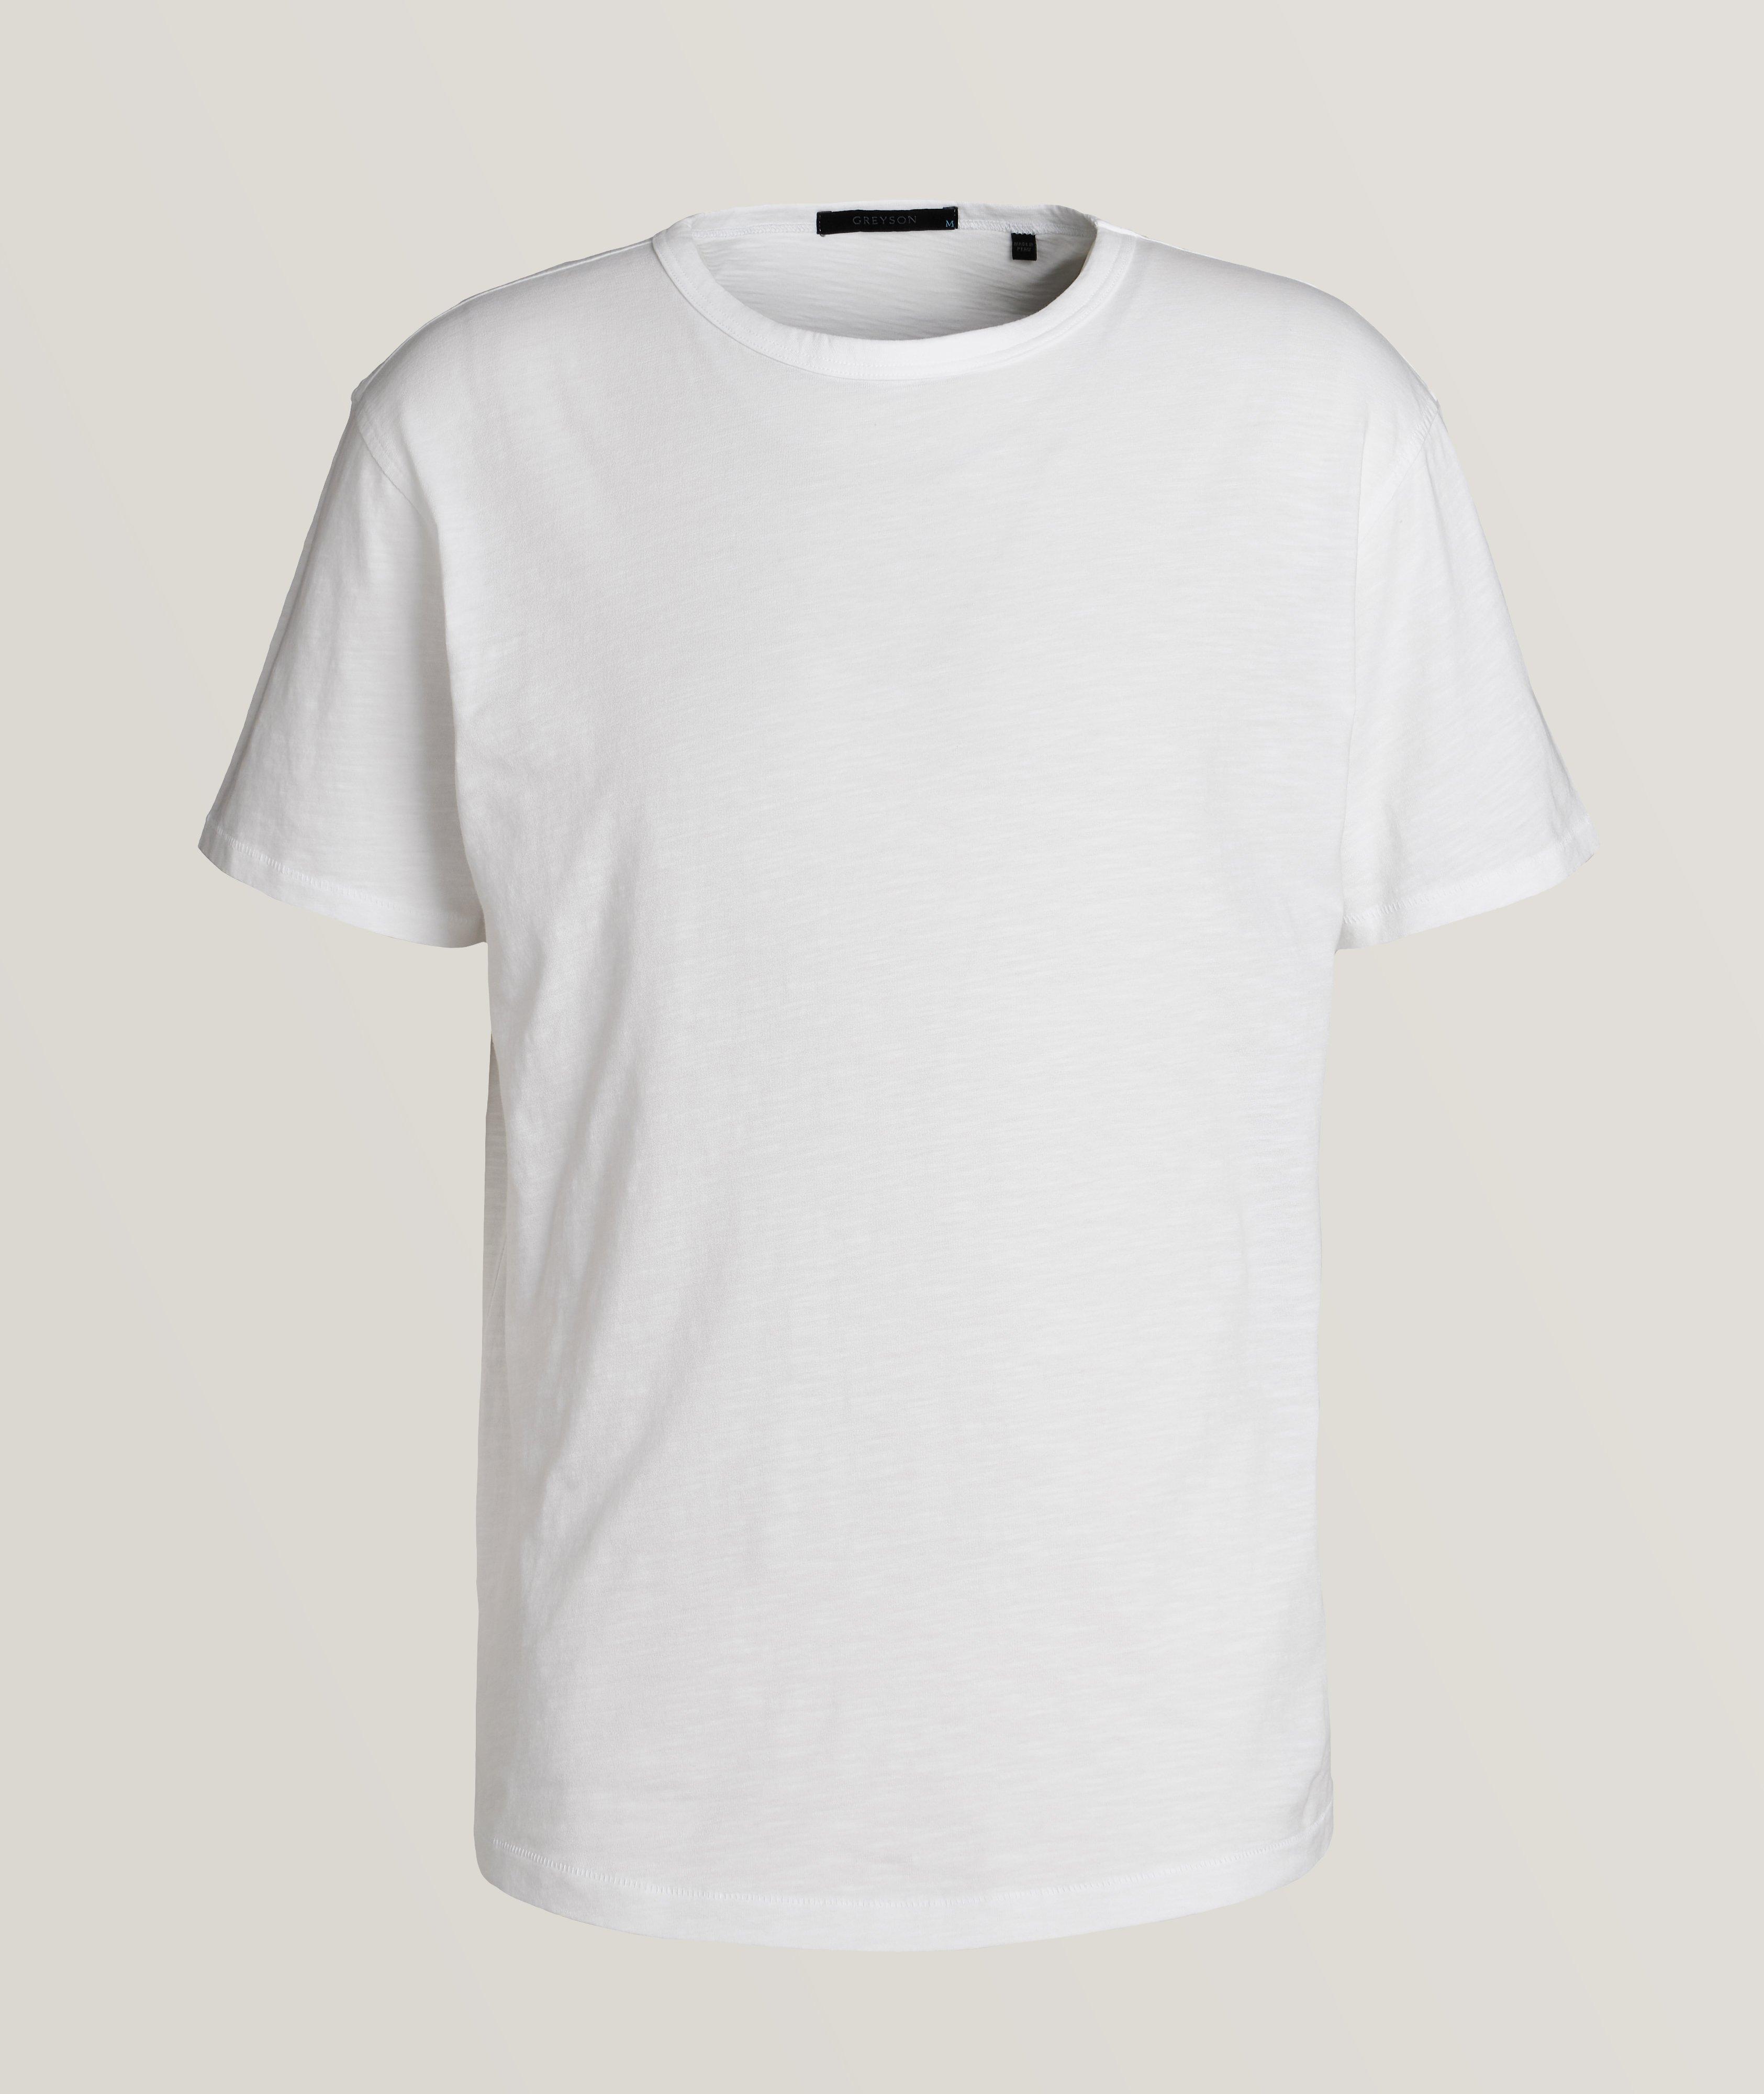 T-shirt athlétique en coton à encolure ronde image 0